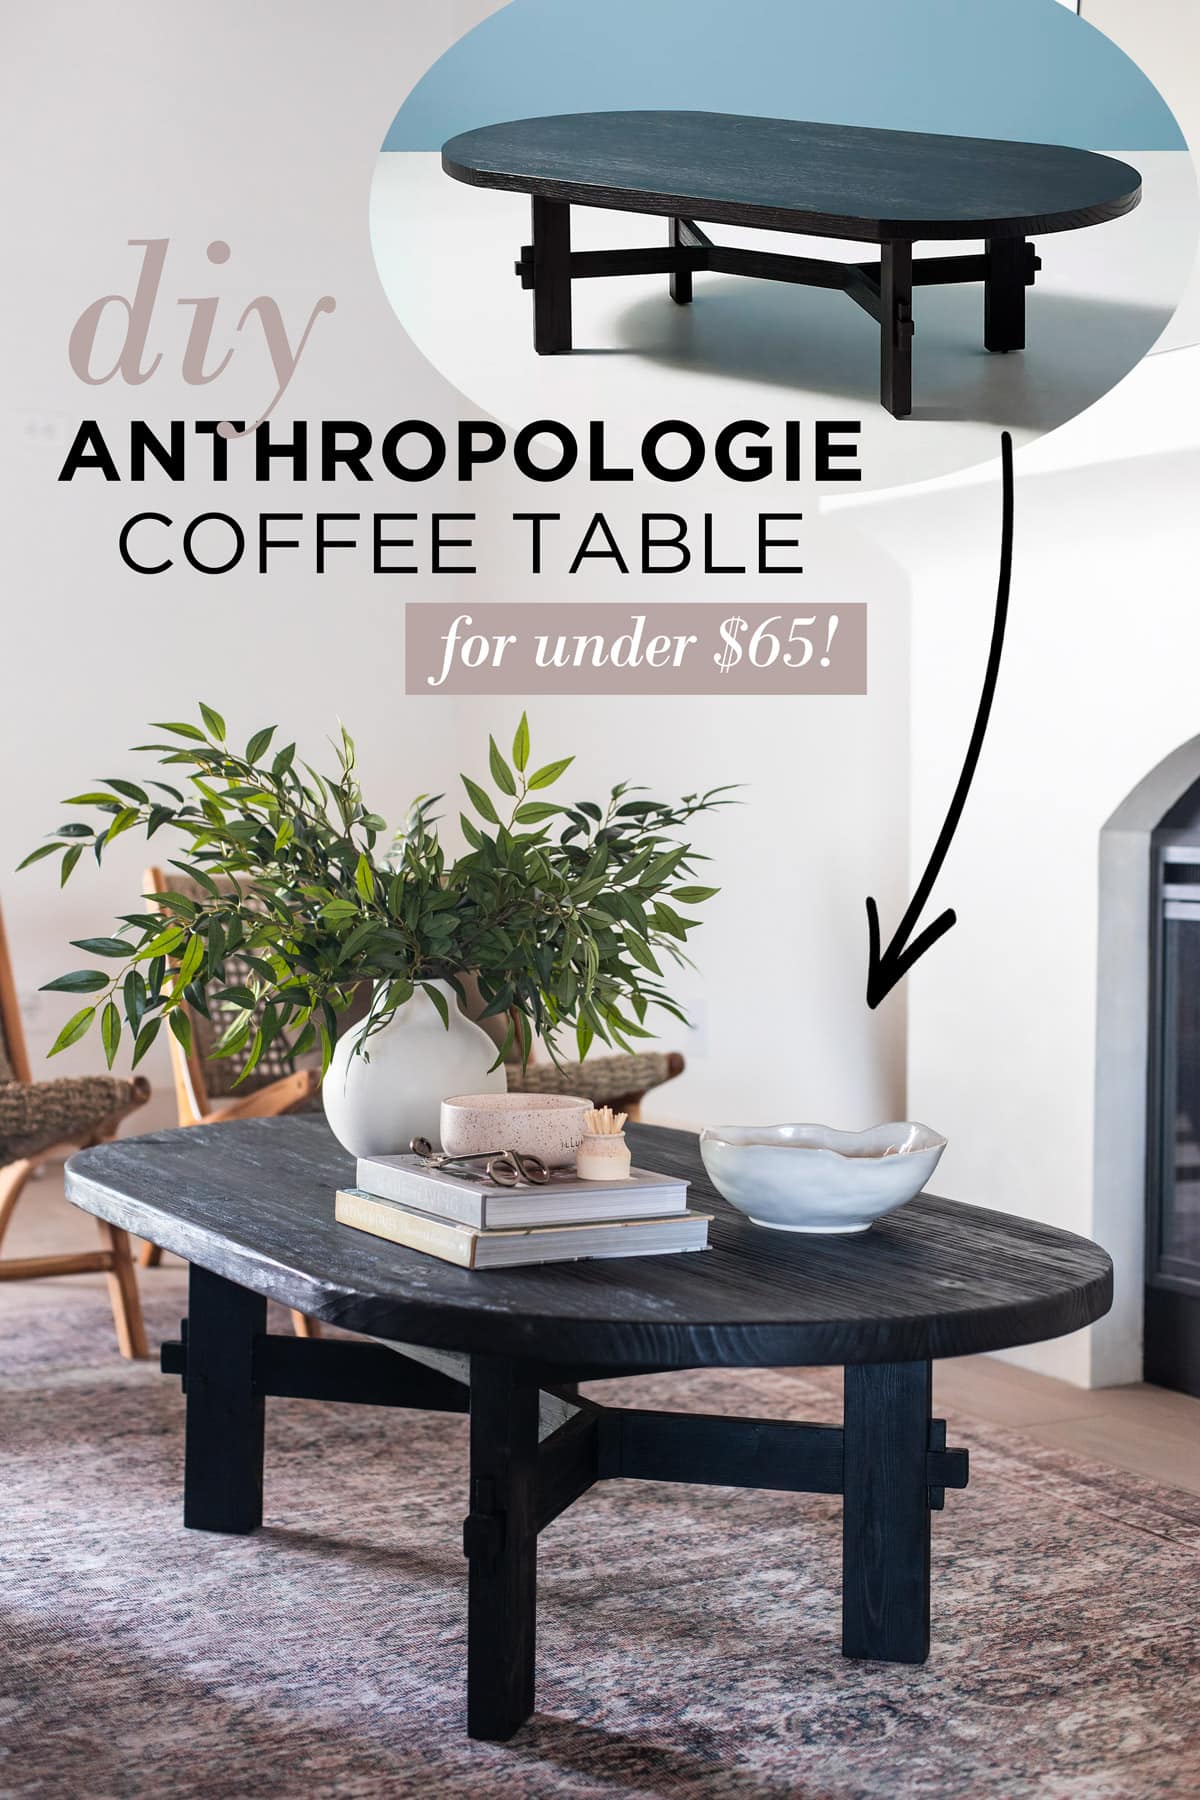 diy anthropologie coffee table tutorial